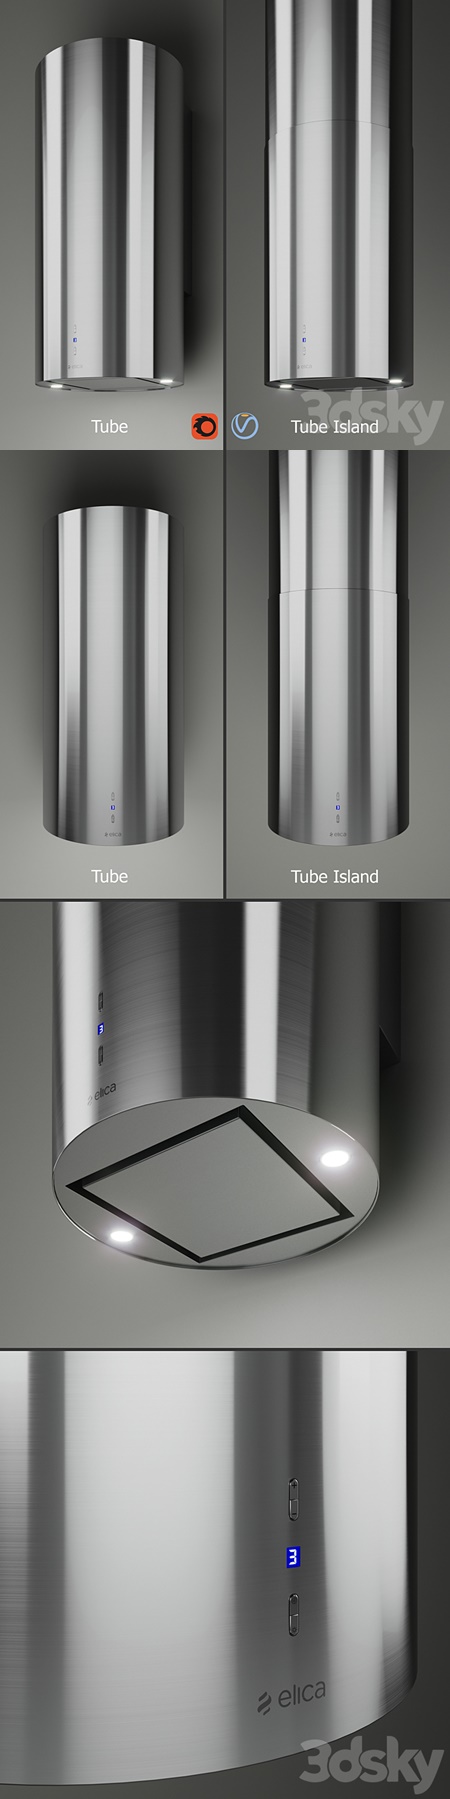 Elica - TUBE + TUBE ISLAND